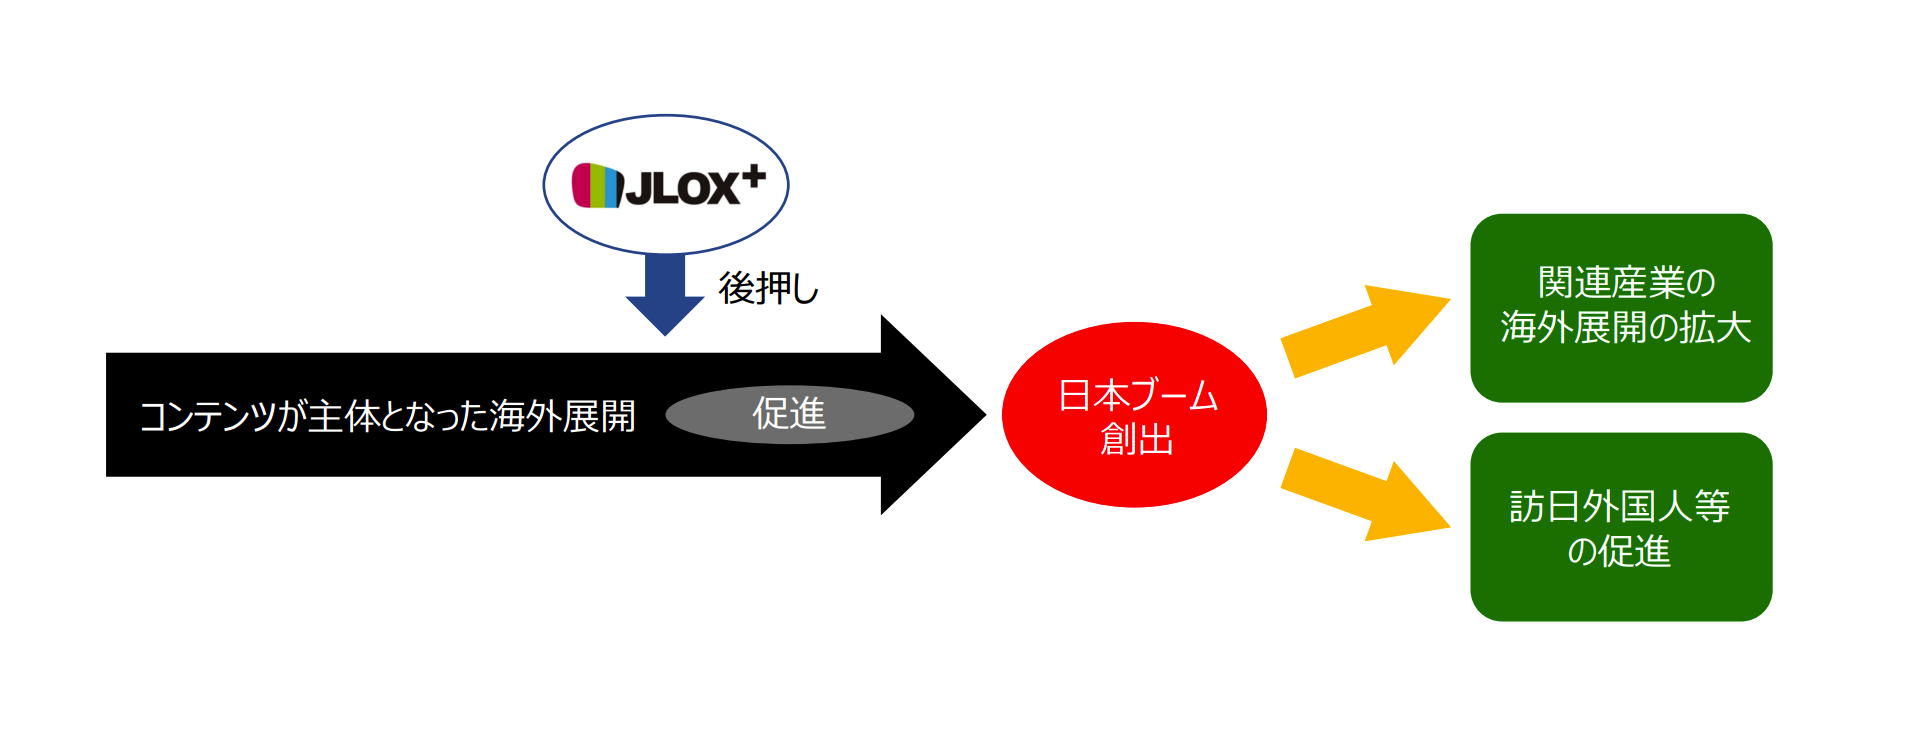 JLOX+1